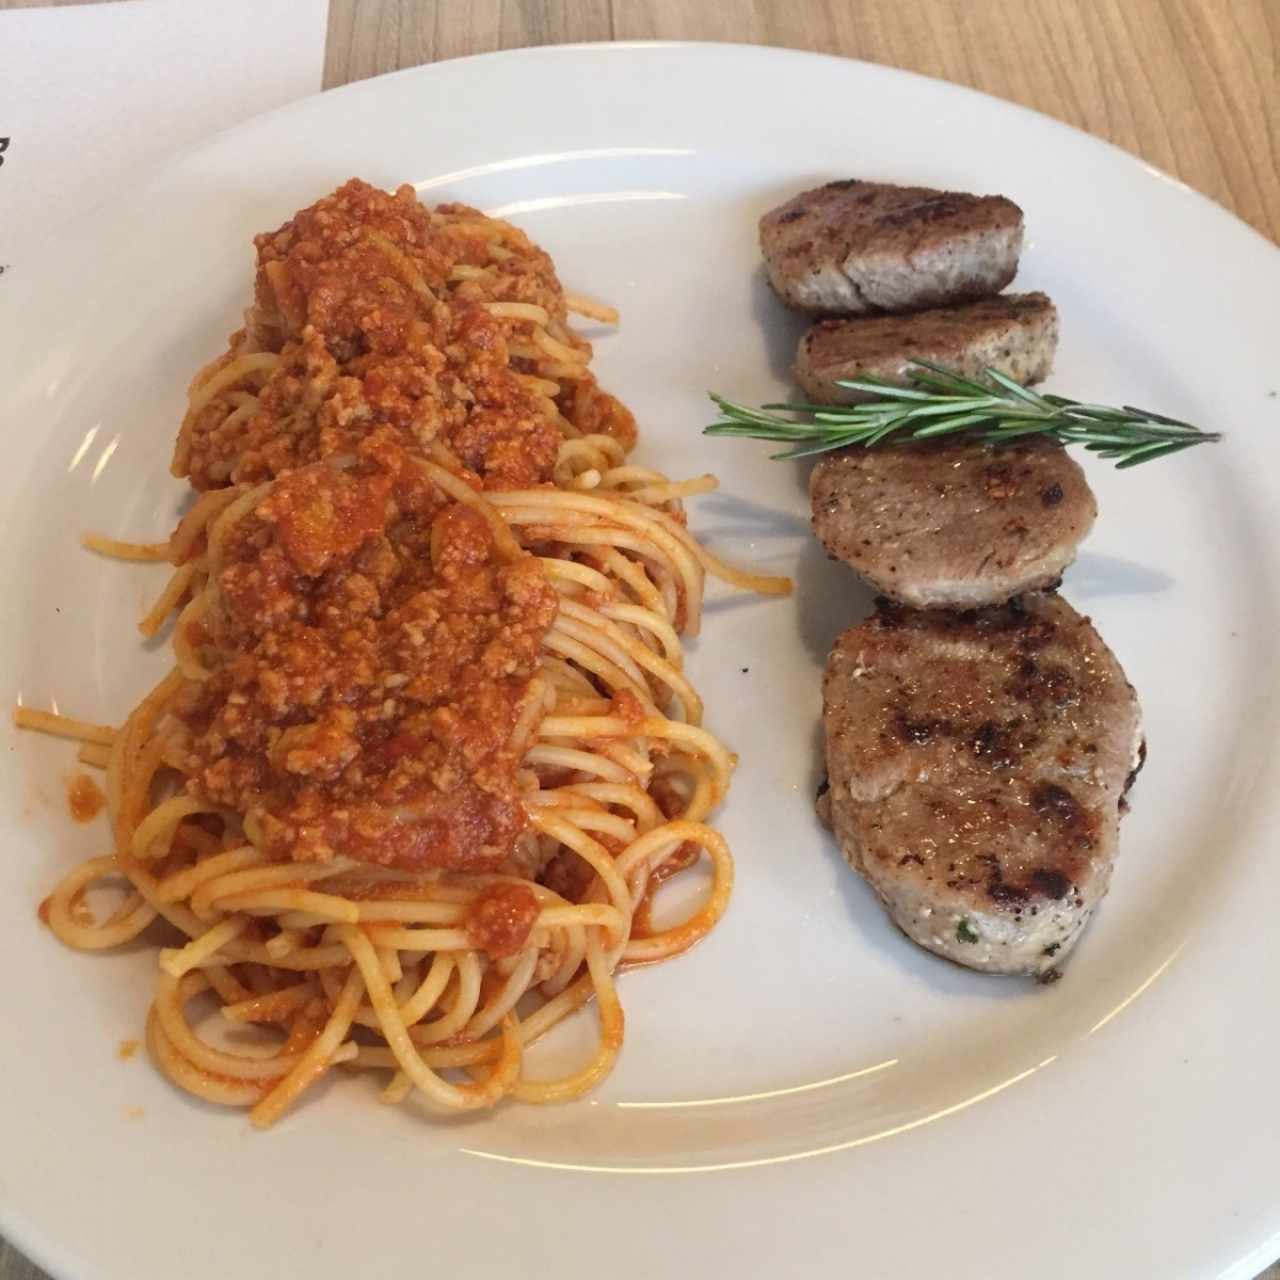 PASTA - Spaghetti Alla Bolognese